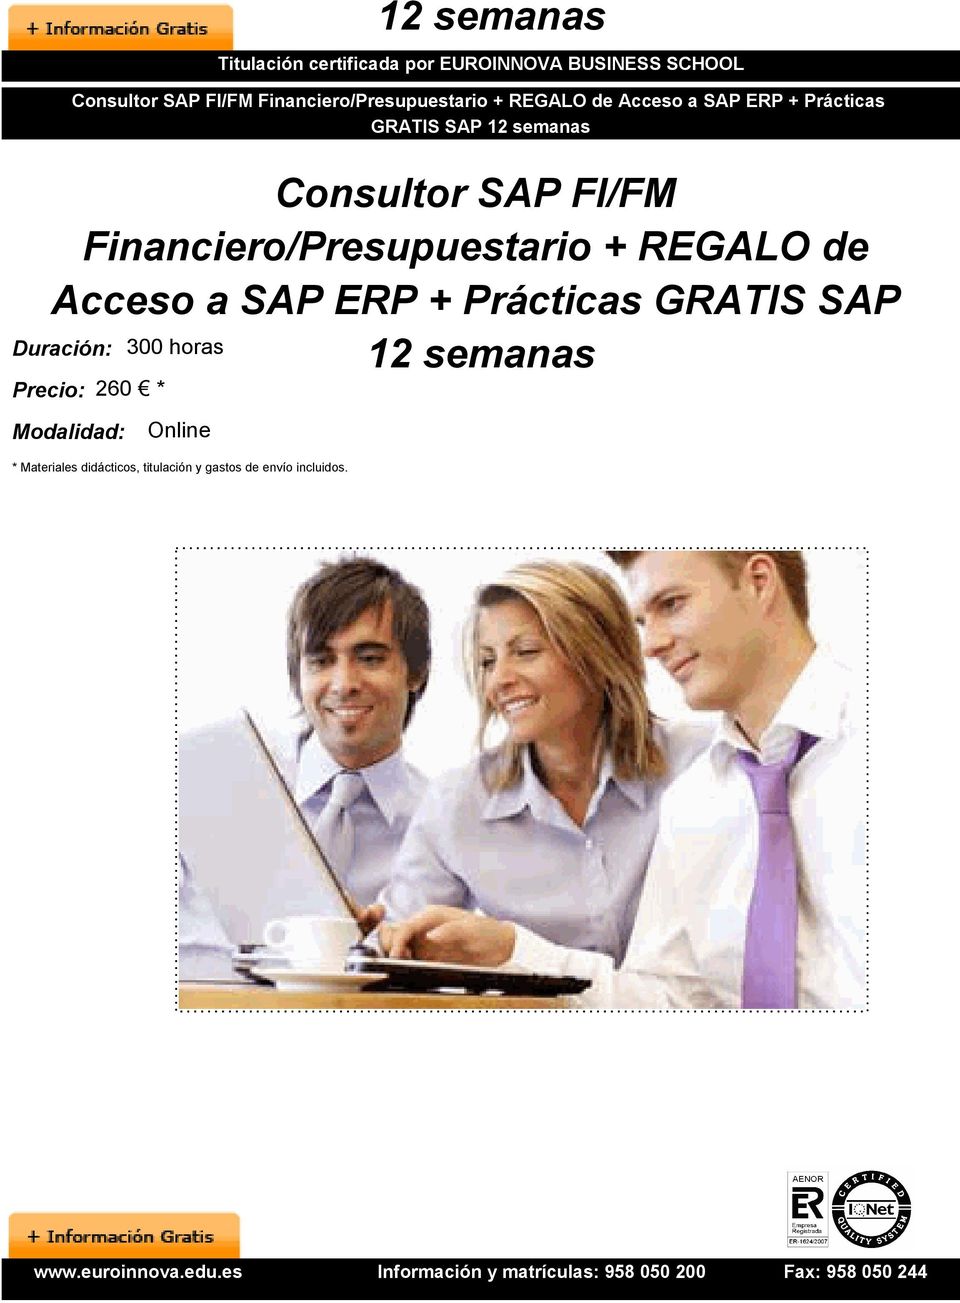 Financiero/Presupuestario + REGALO de Acceso a SAP ERP + Prácticas GRATIS SAP 12 semanas